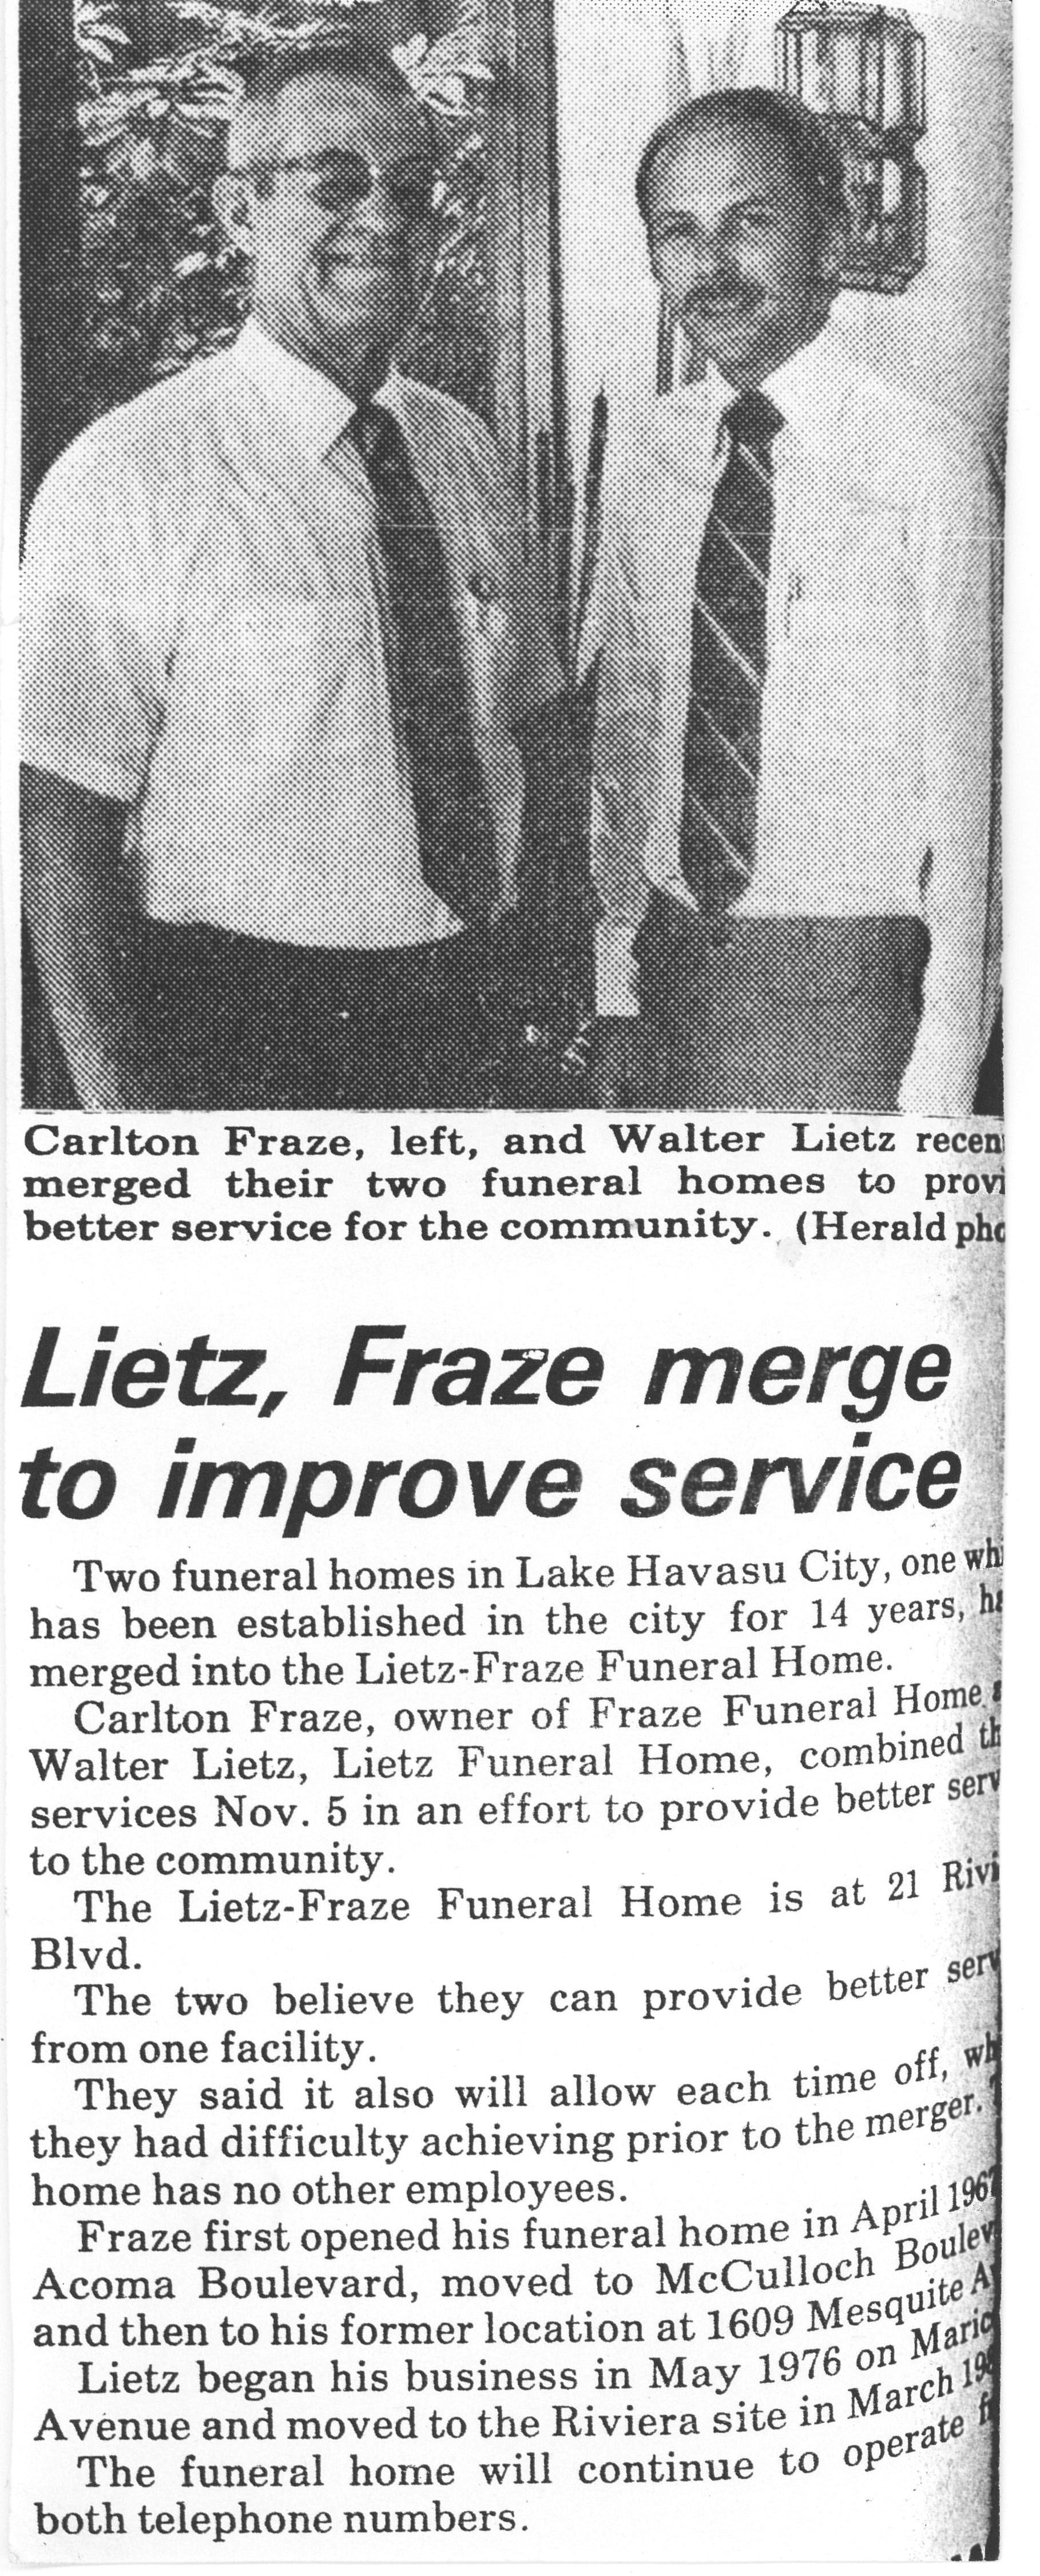 Lietz - Fraze Funeral Home & Crematory